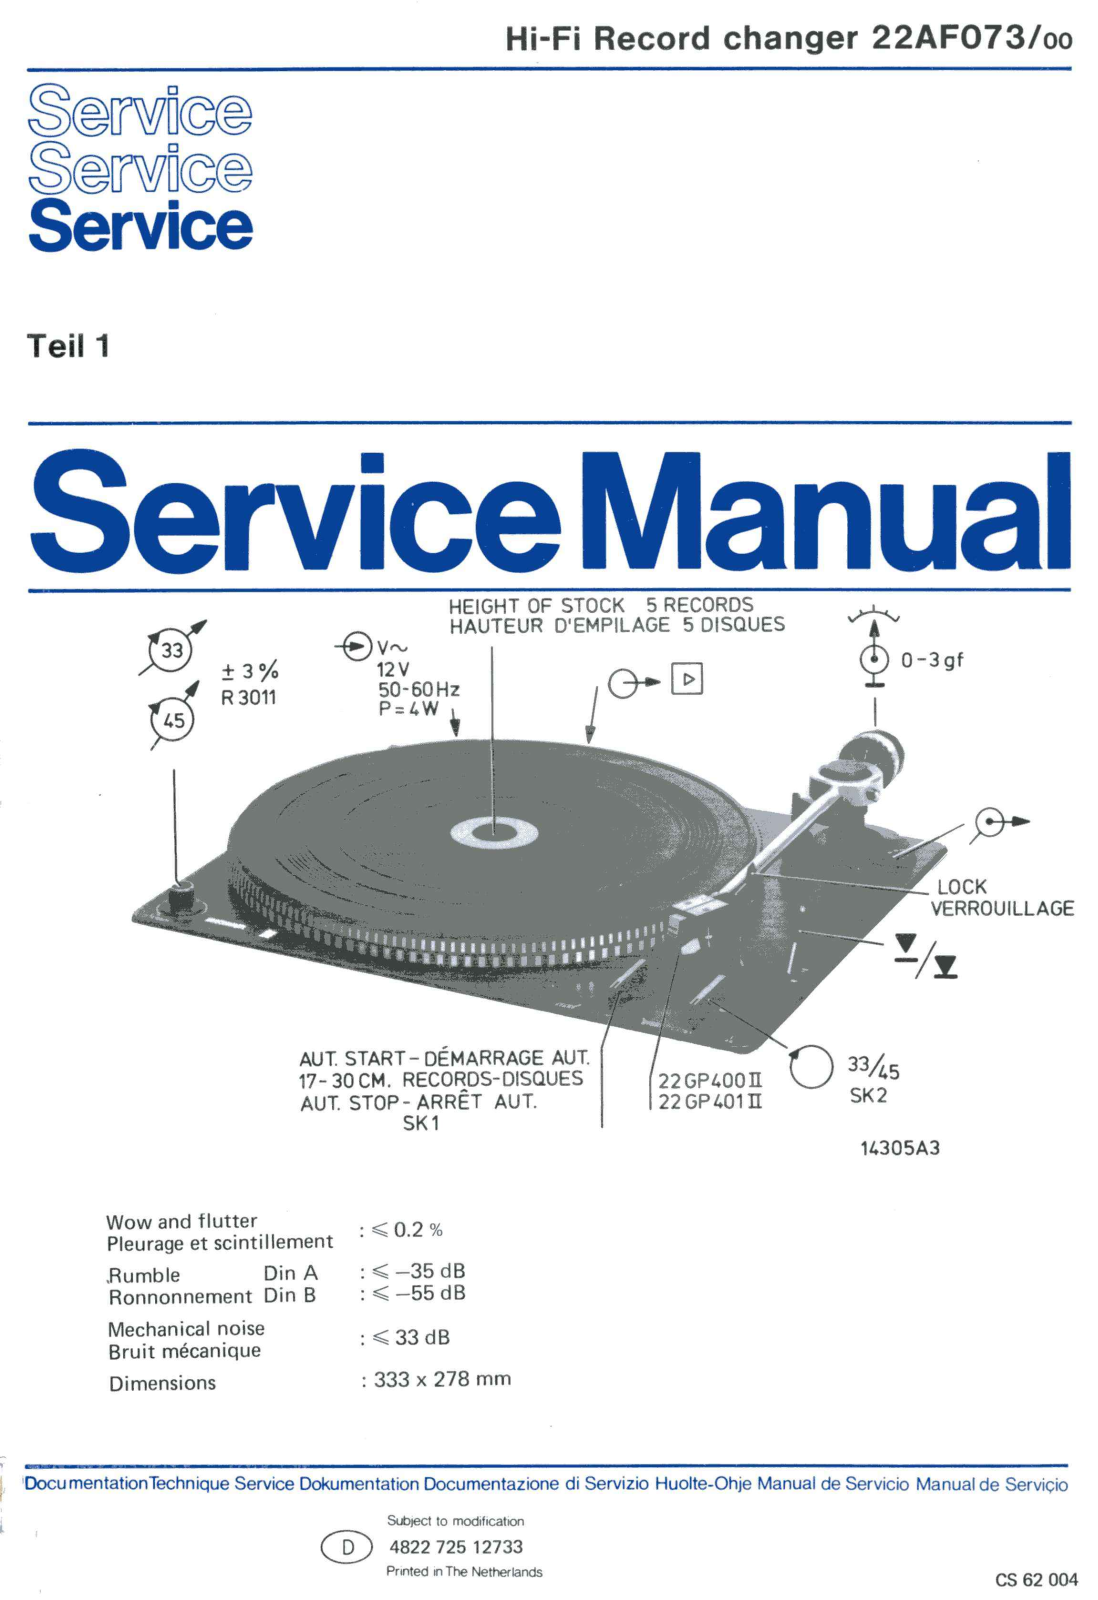 Philips 22-AF-073 Service Manual